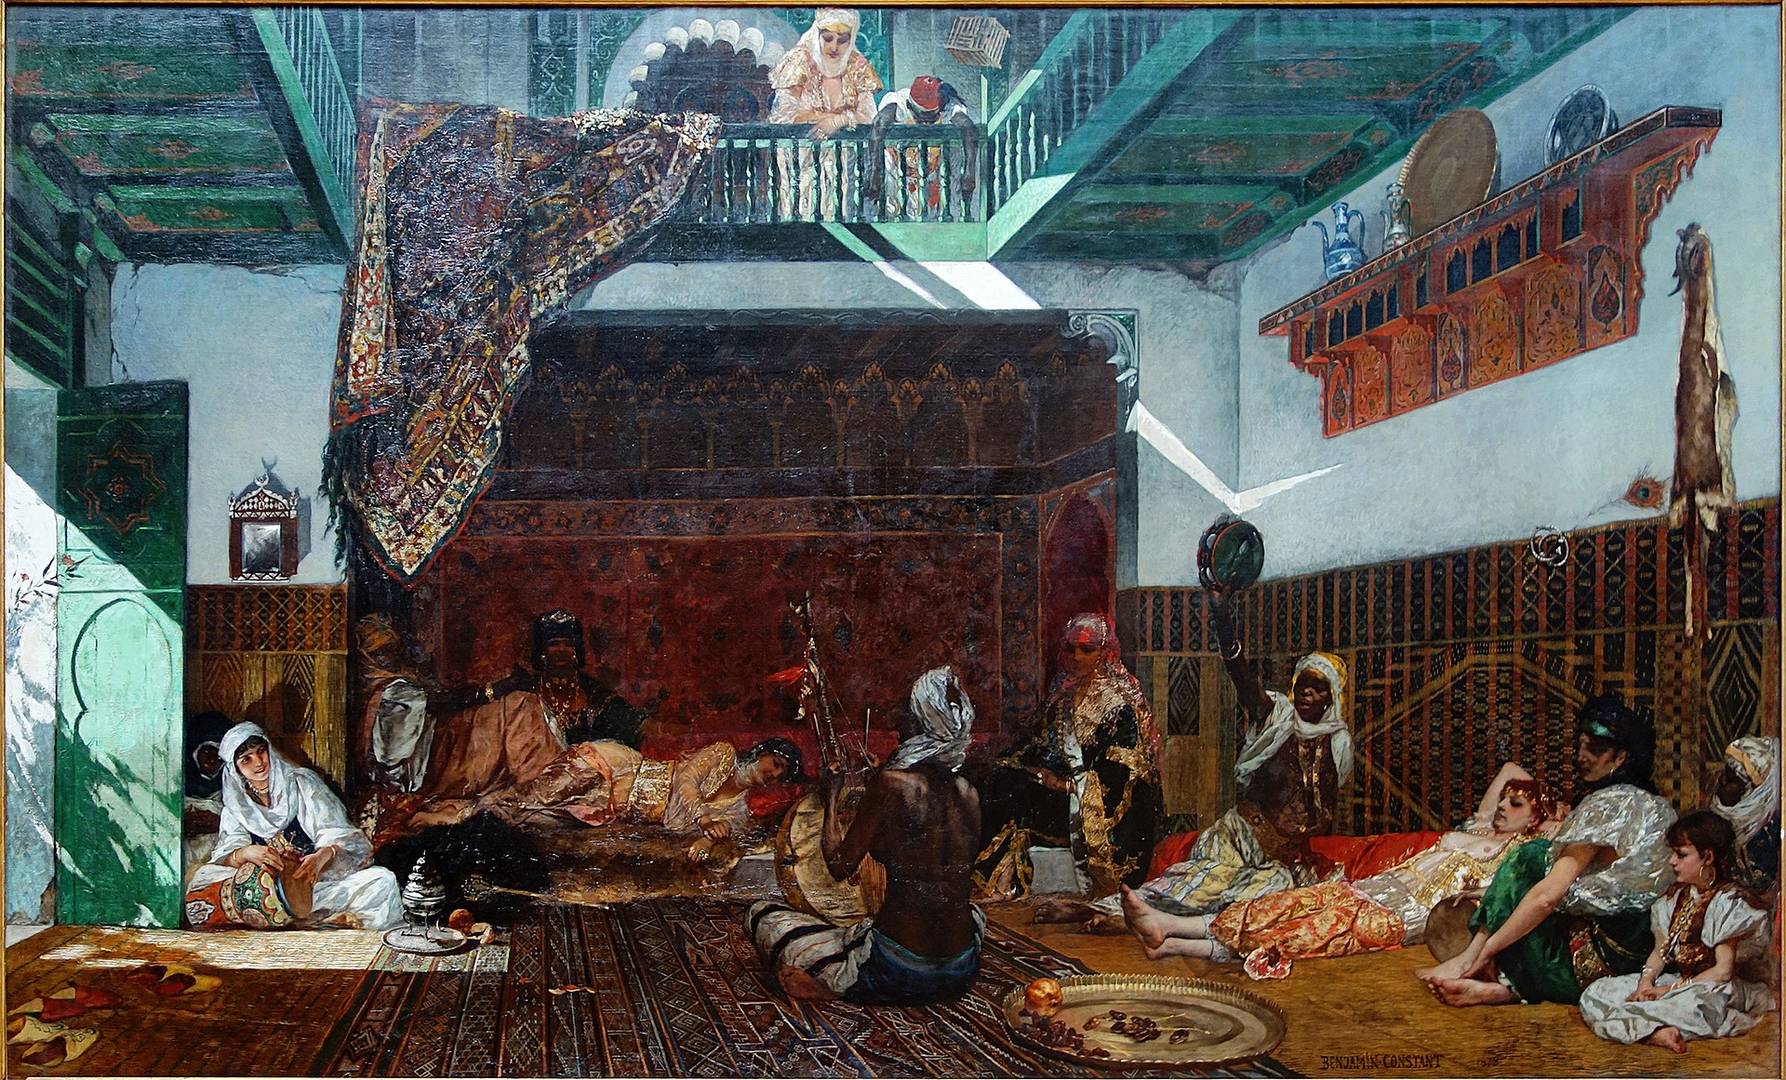 Жан-Жозеф Бенжамен-Констан. Интерьер гарема в Марокко. 1878